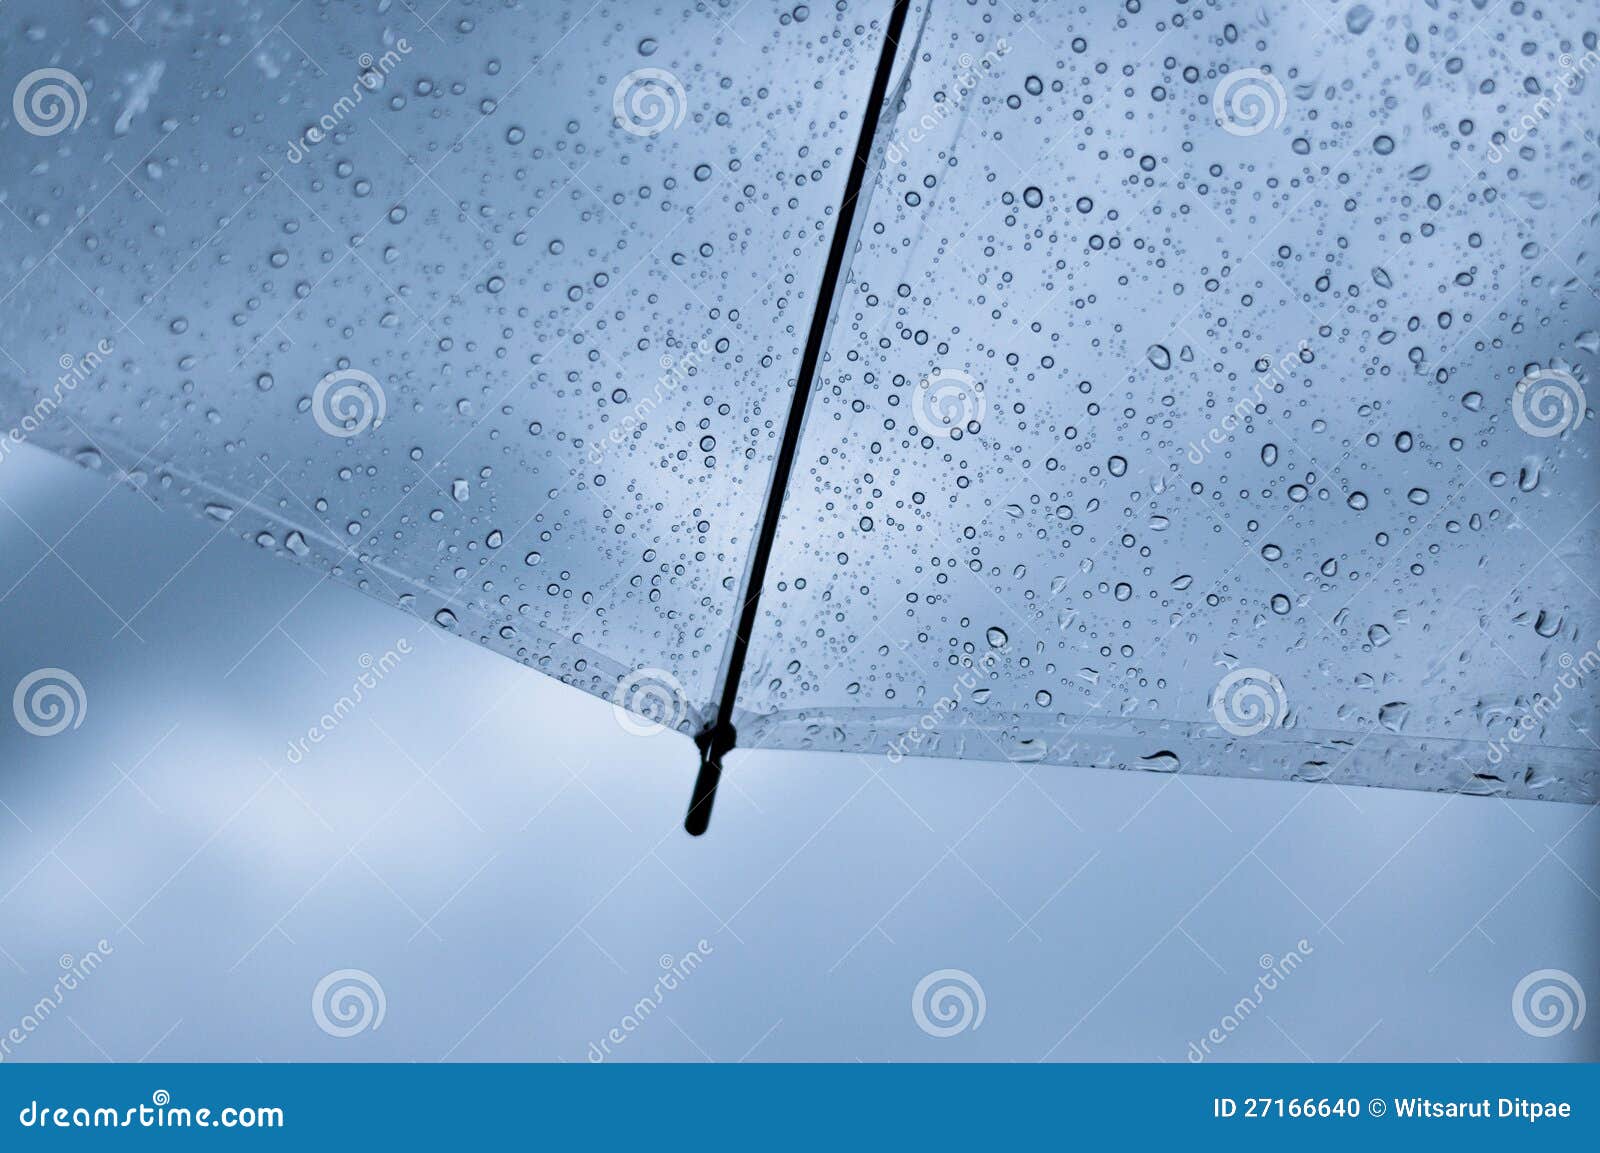 transparent umbrella with raindrop